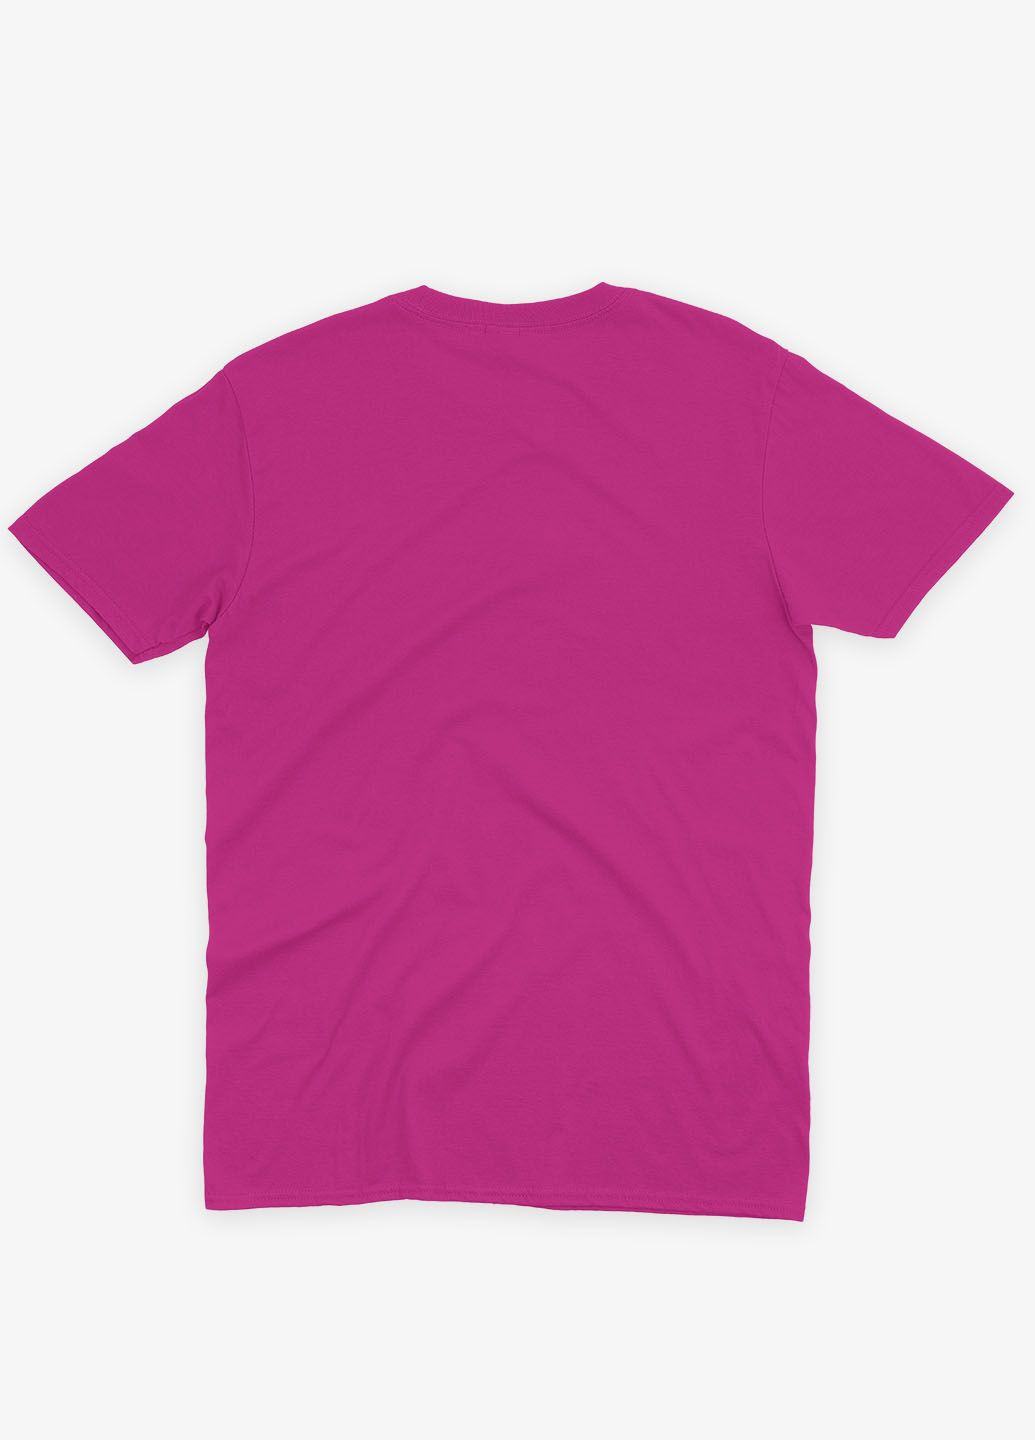 Розовая демисезонная футболка для девочки с принтом супергероя - человек-паук (ts001-1-fuxj-006-014-092-g) Modno